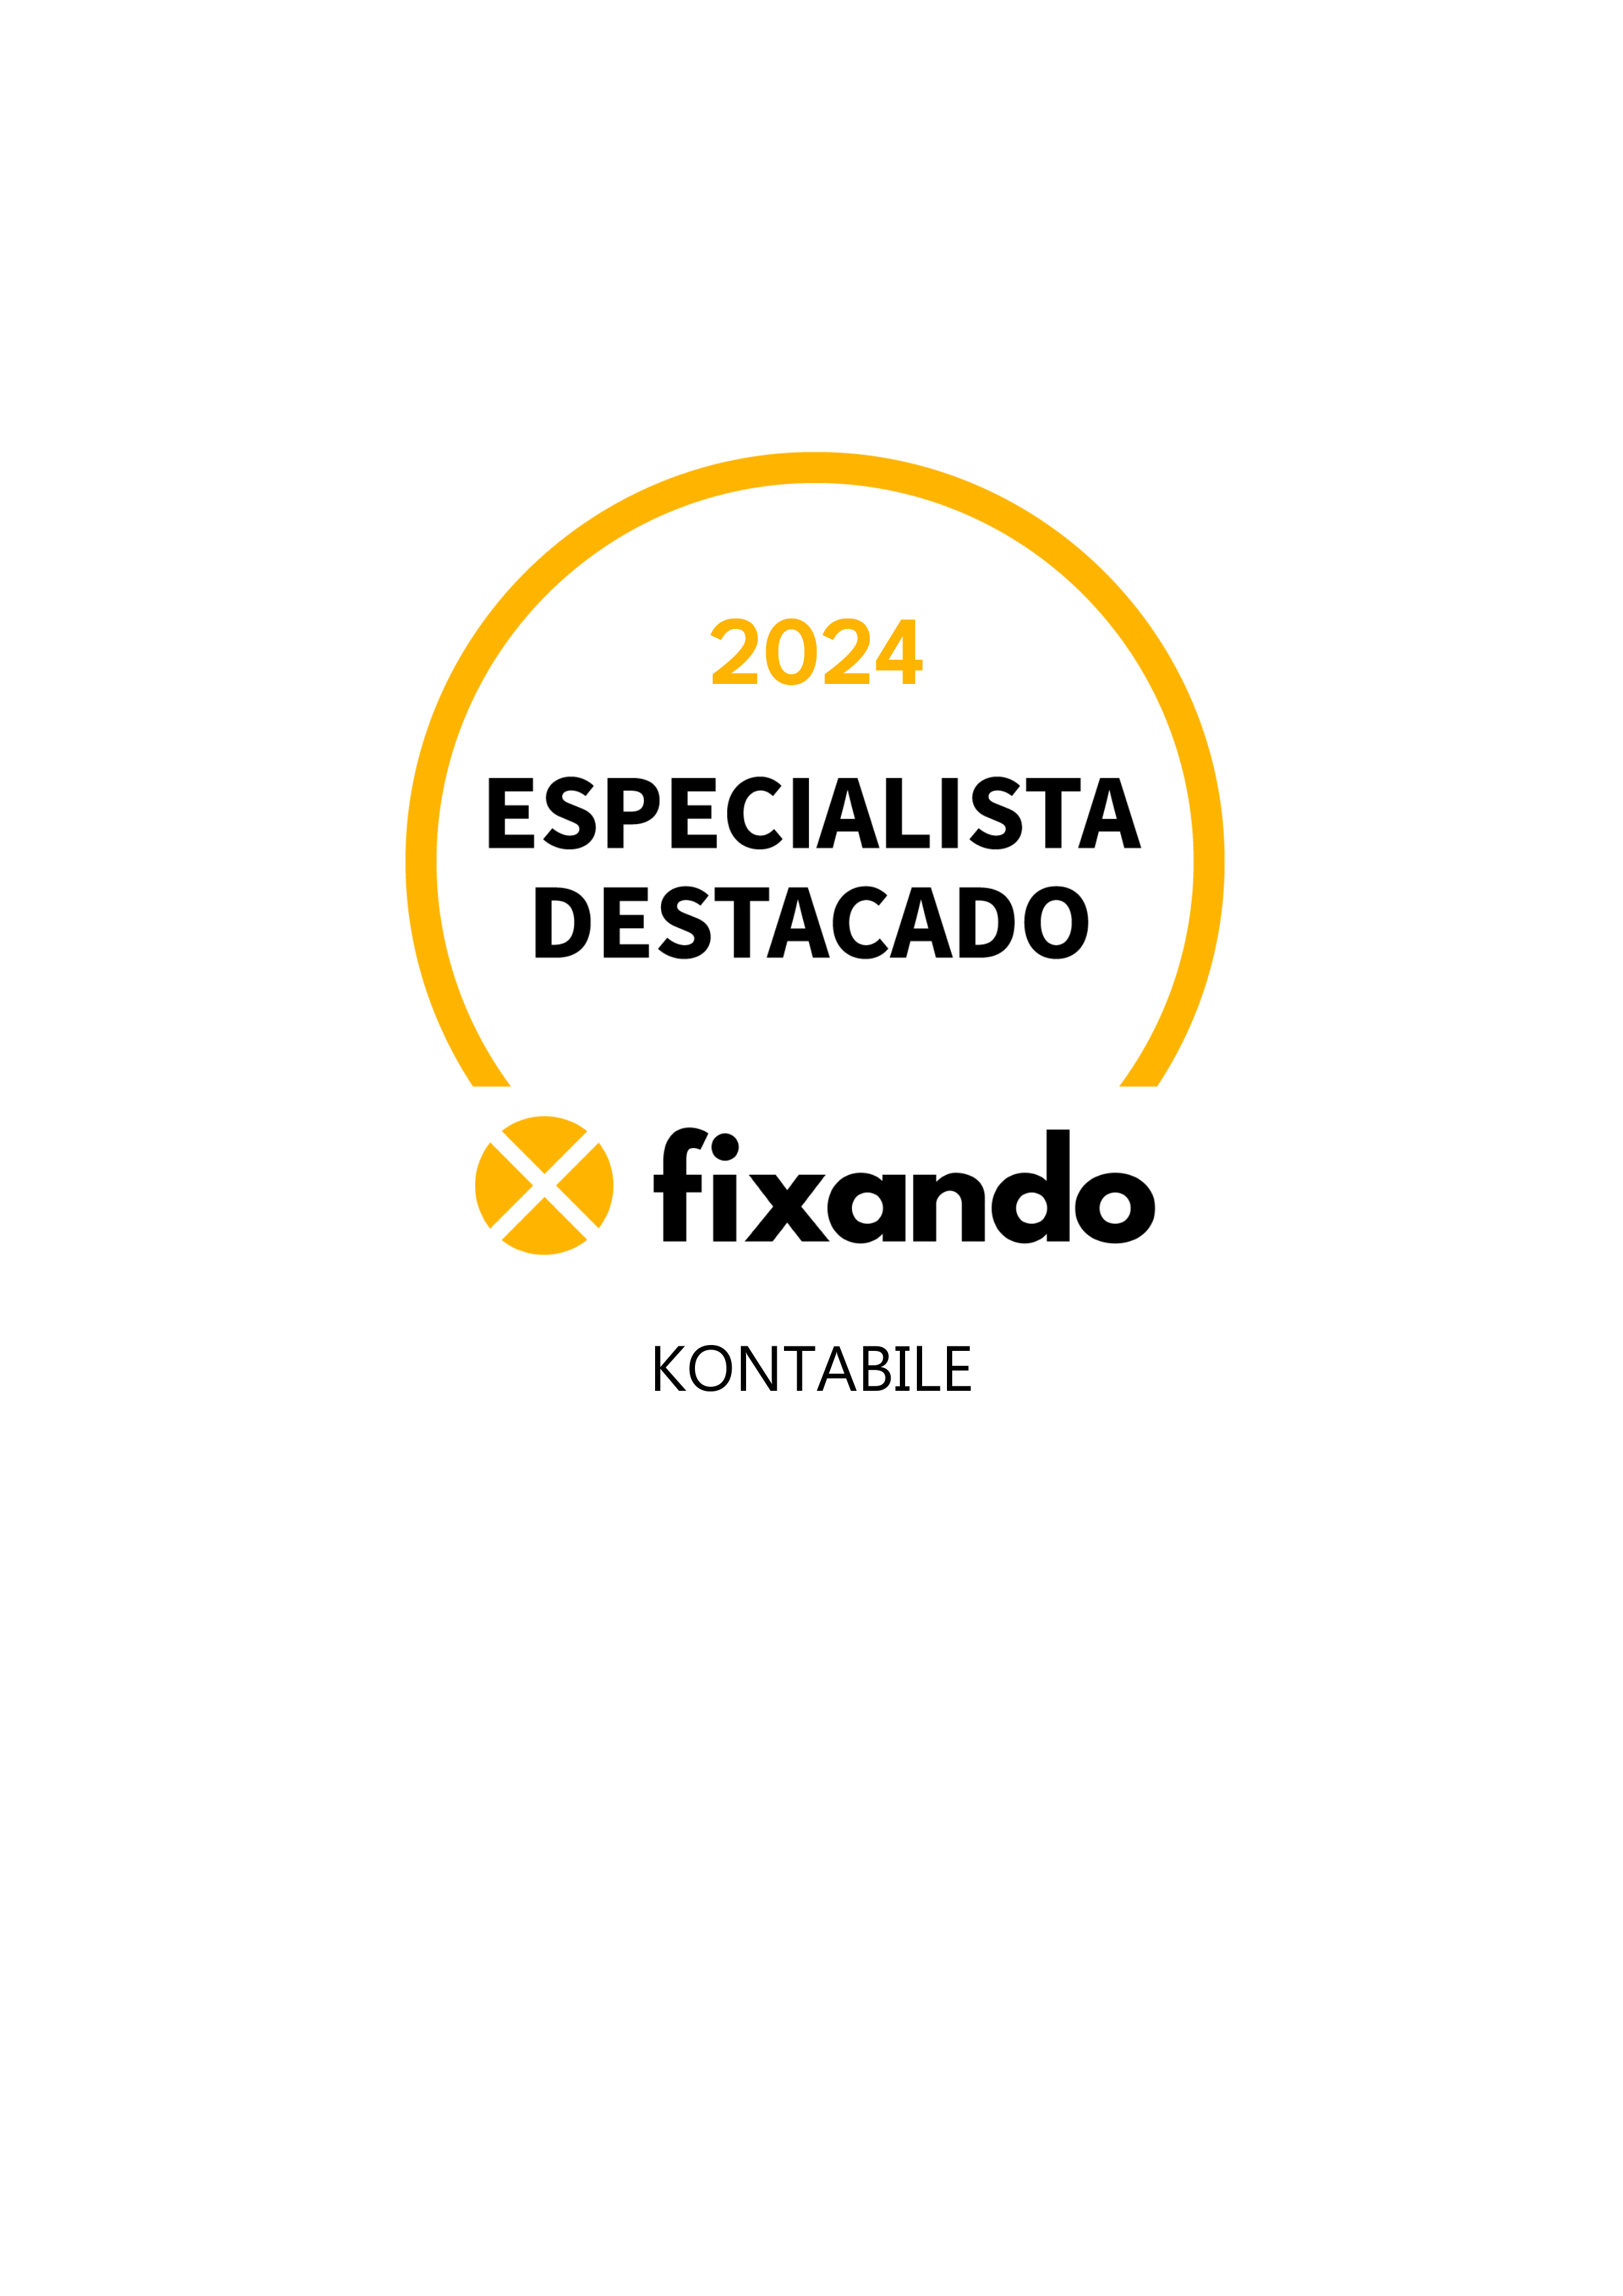 Kontabile - Coimbra - Desenvolvimento de Aplicações iOS